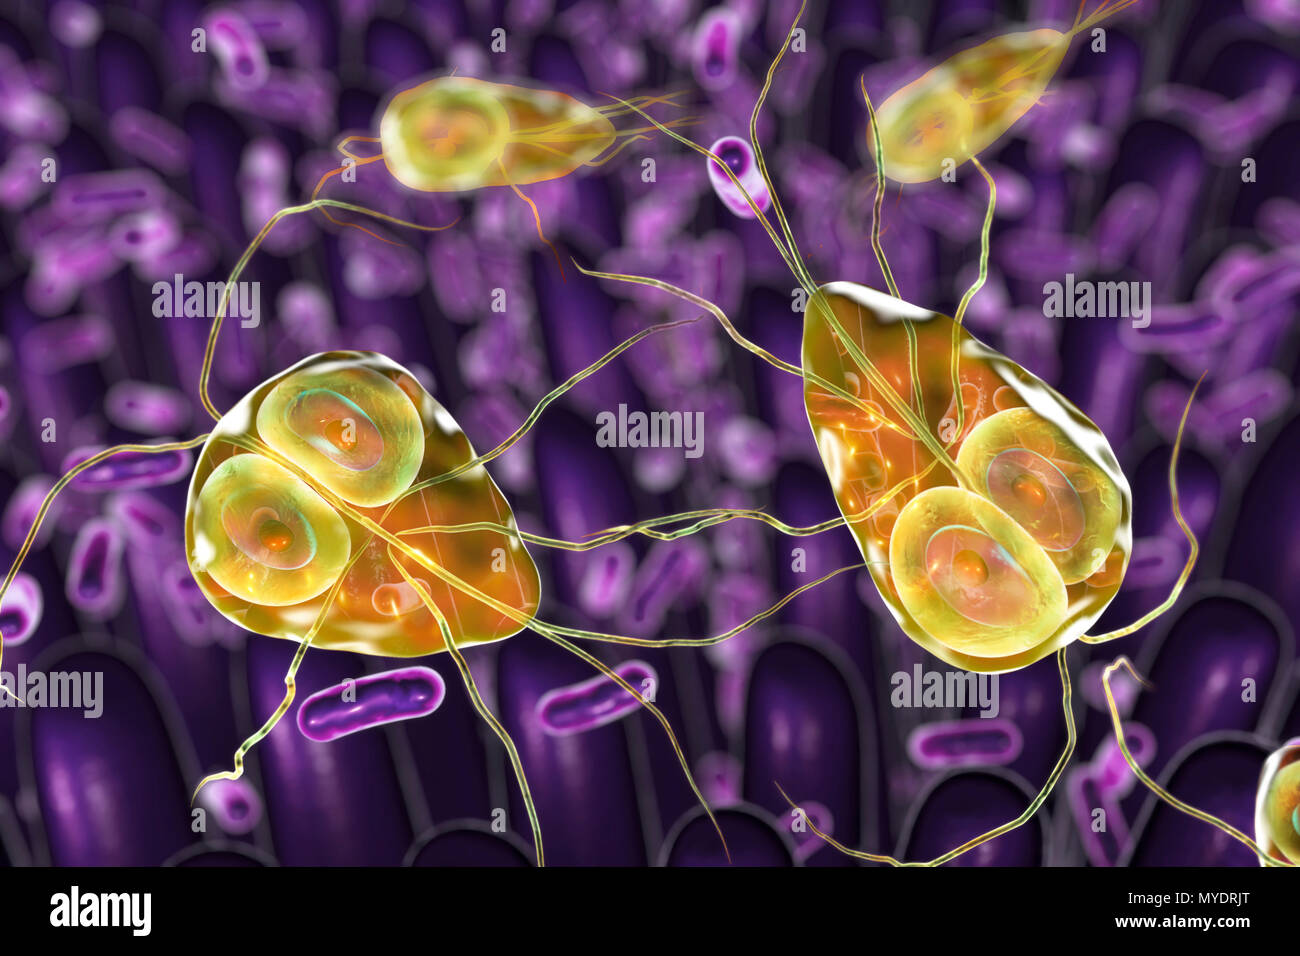 Giardia lamblia parassiti nel duodeno, illustrazione del computer. Giardia lamblia è un protozoo flagellato parassita. Esso colonizza e riproduce nel piccolo intestino e provoca la giardiasi. Foto Stock